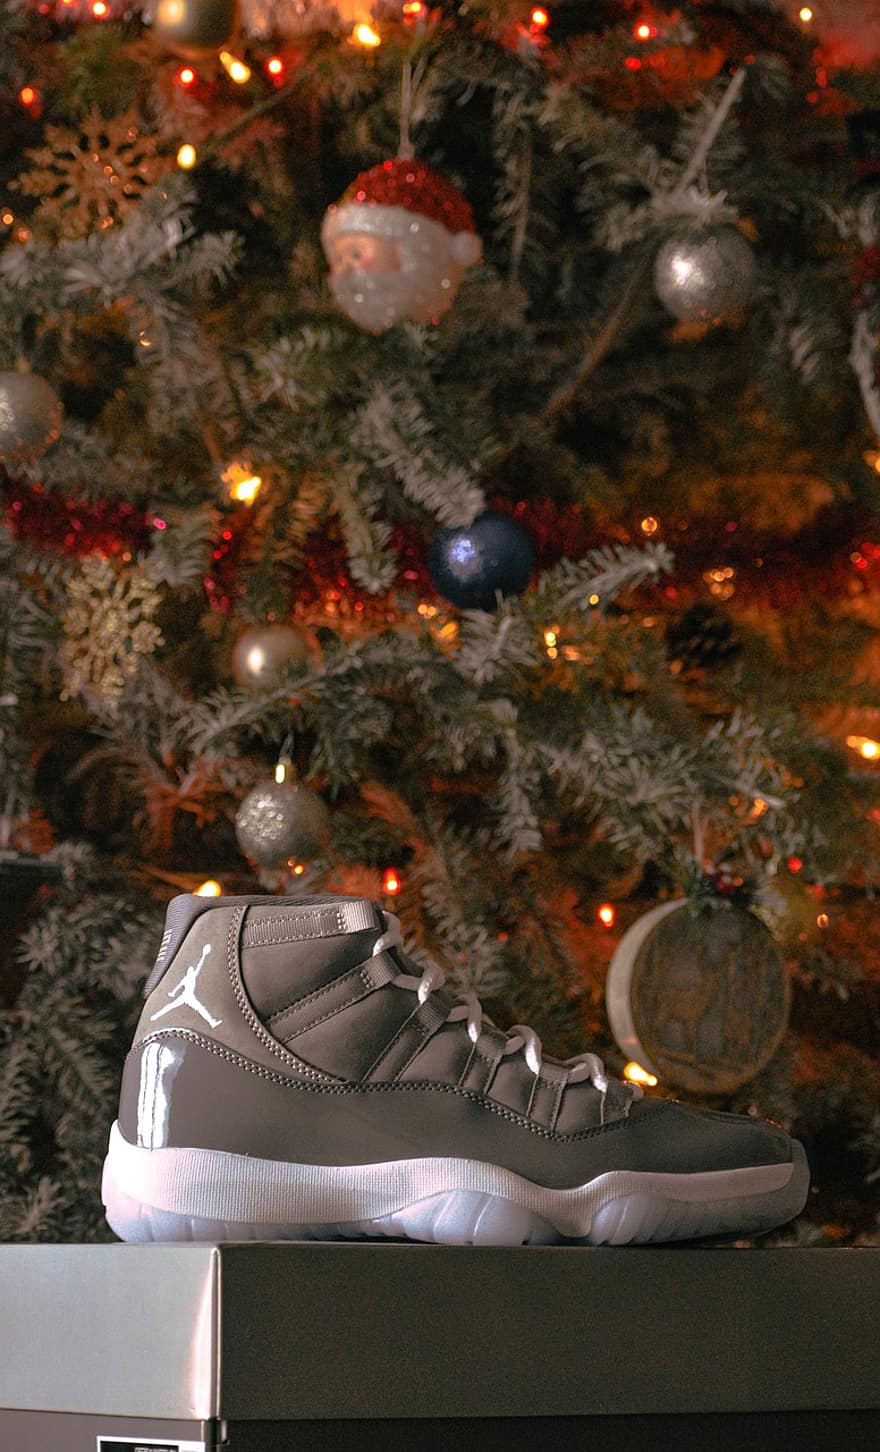 des chaussures, Noël, mode, fond d'écran, écran verrouillé, Jordan